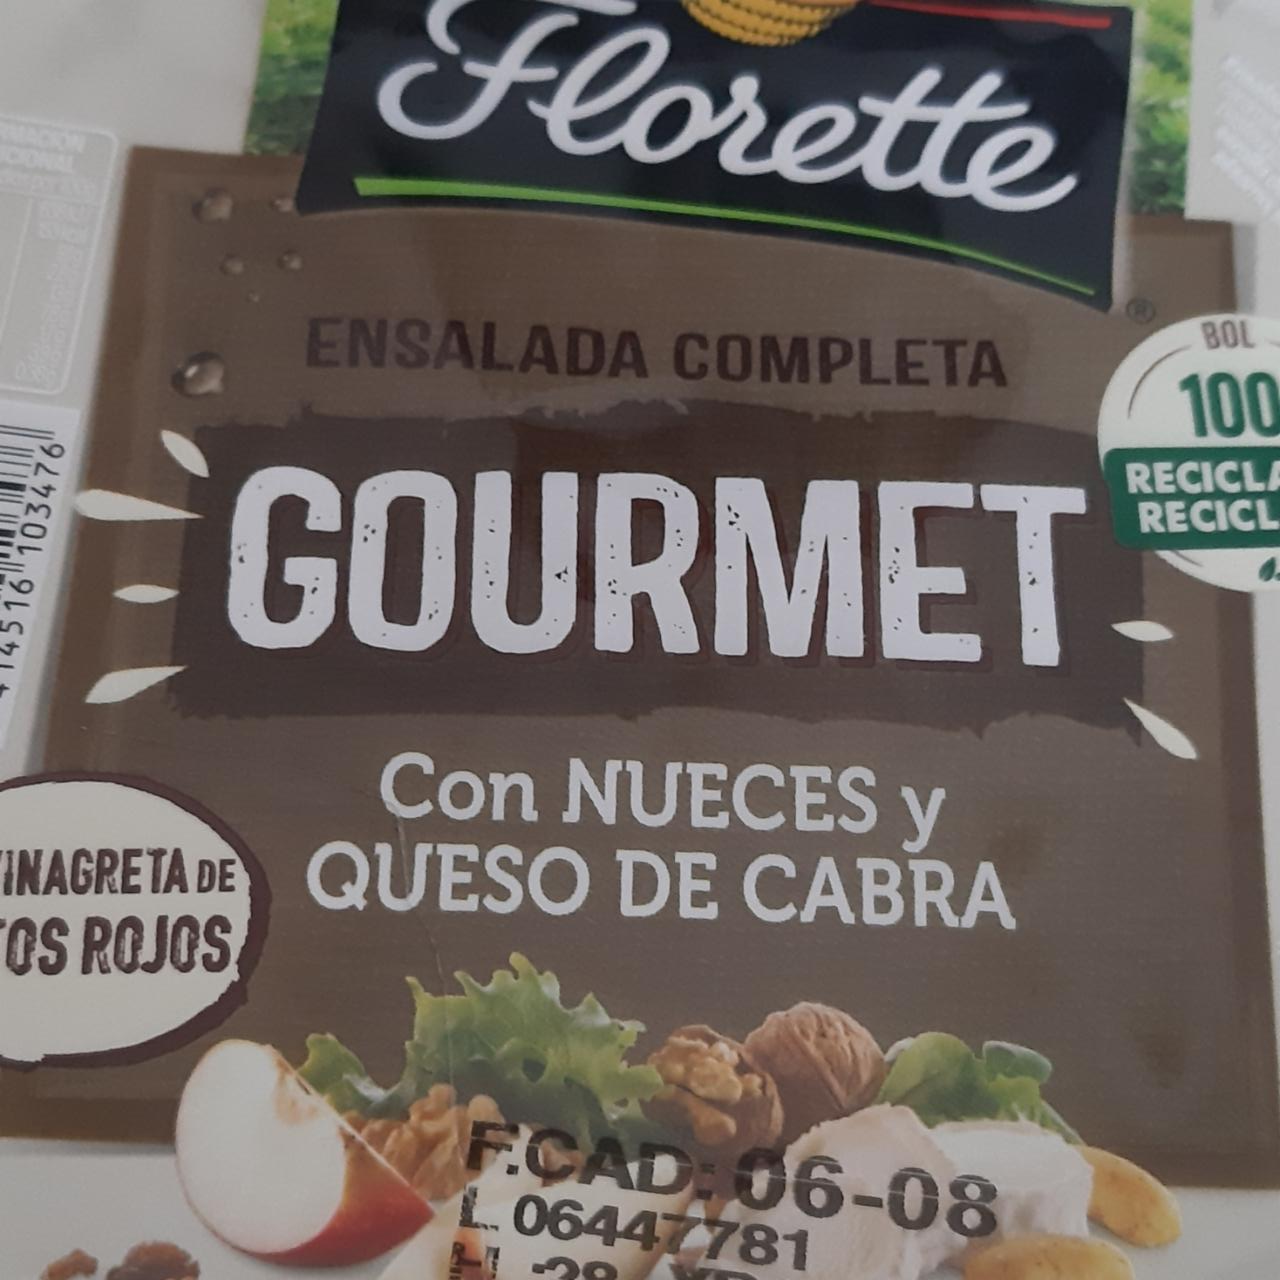 Fotografie - Ensalada Completa Gourmet con nueces y queso de cabra Florette